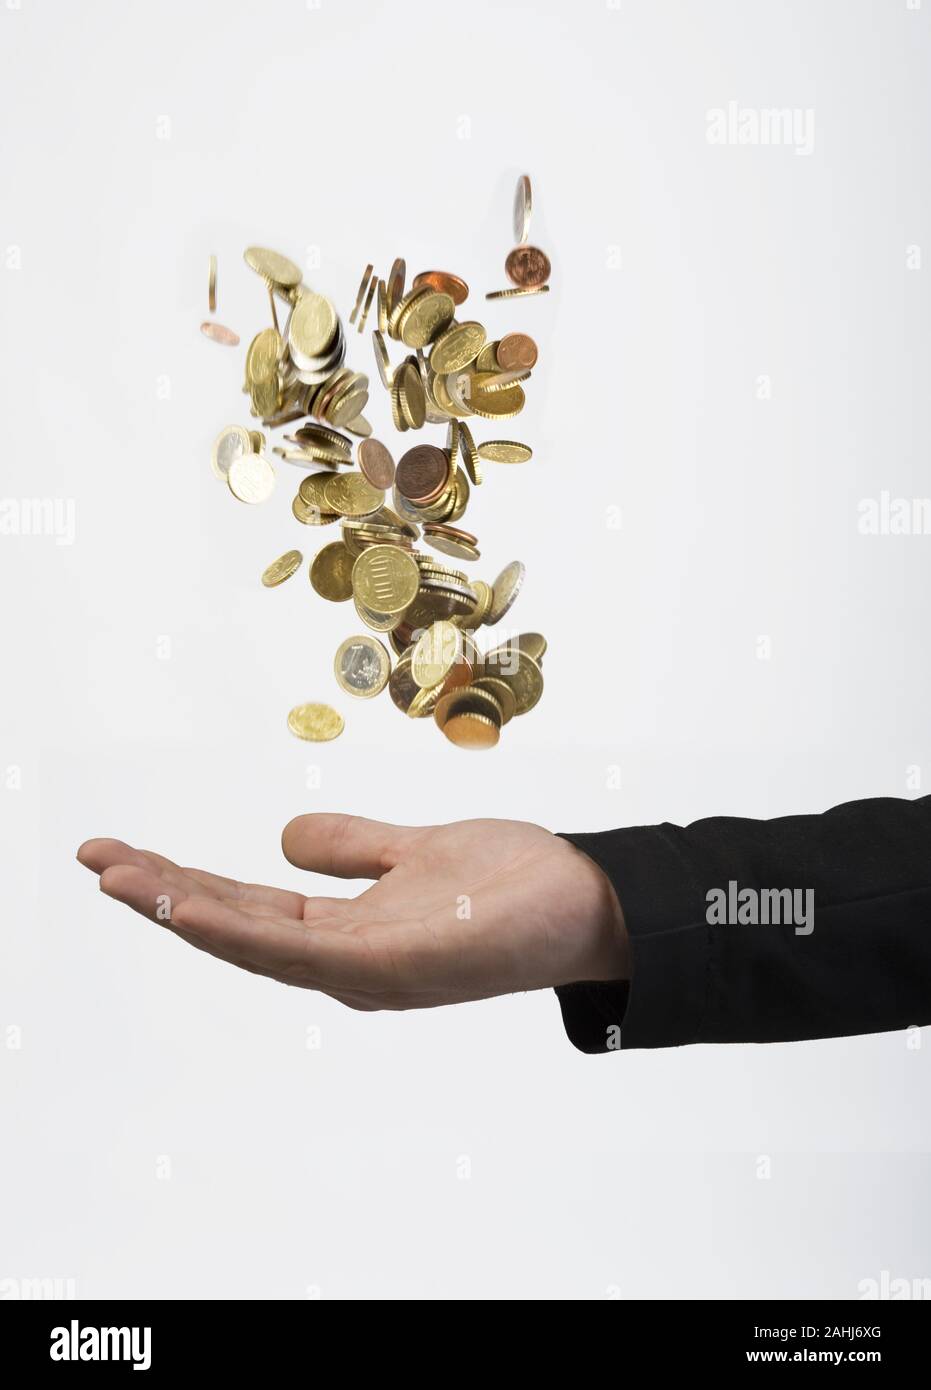 Mann wirft Geldmünzen in die Luft, fängt dise dann auf. Vermögensberater, Finanzjongleur, MR:Yes Stock Photo